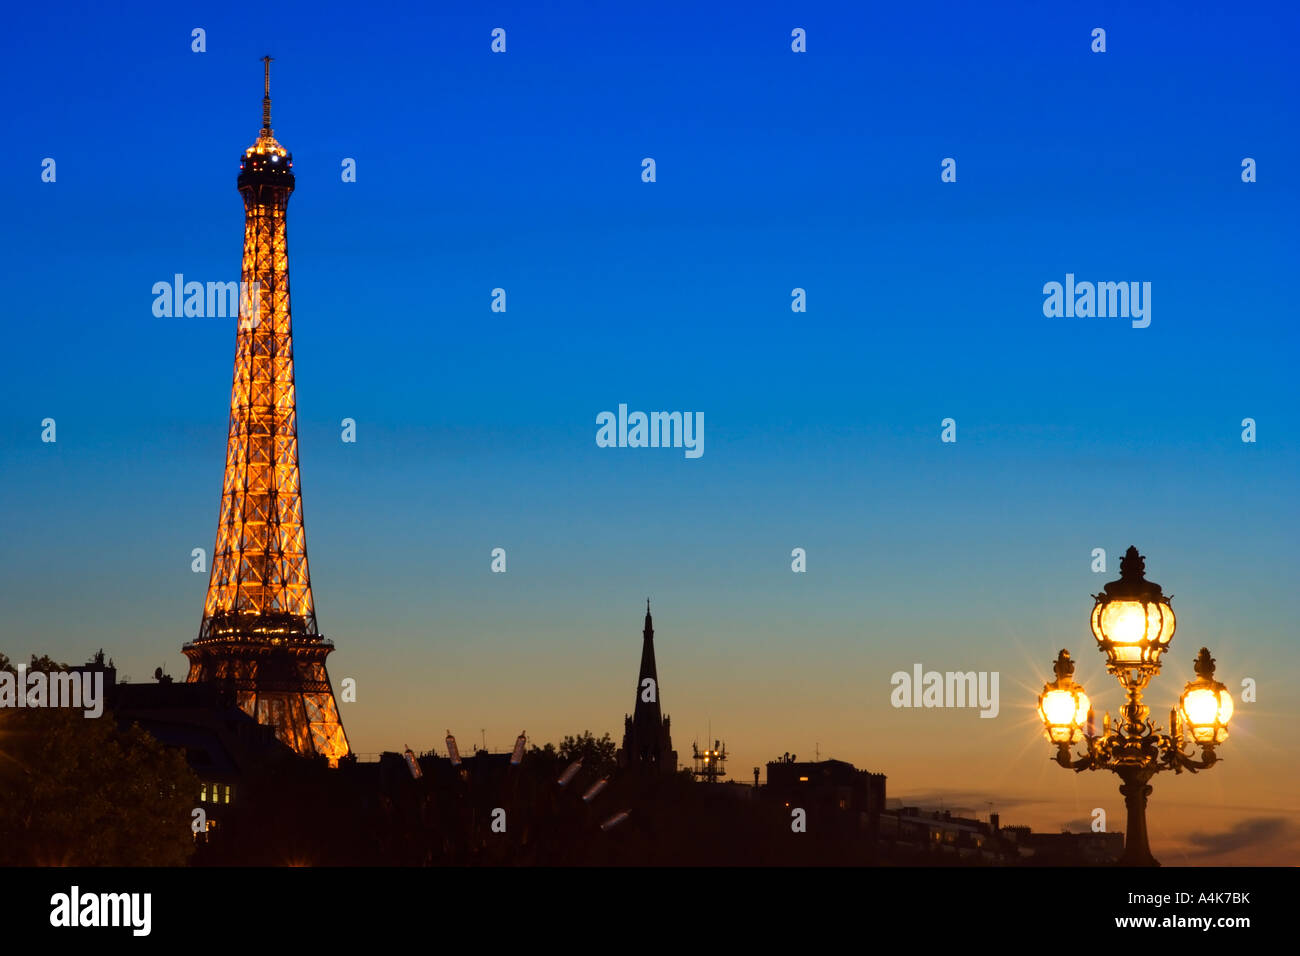 La ville de Paris avec la Tour Eiffel de nuit - Paris, France Banque D'Images